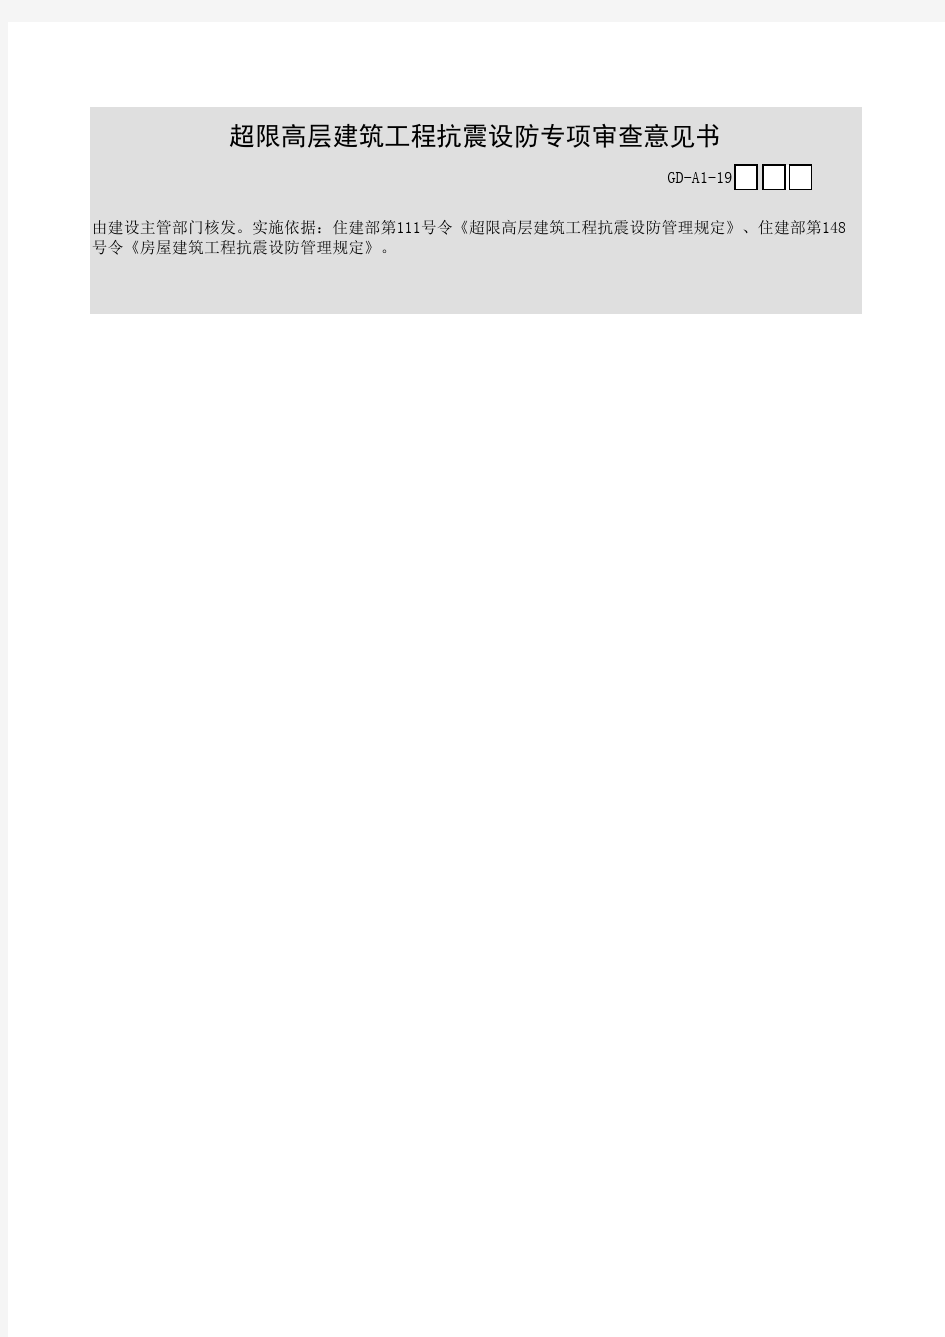 广东省建筑工程统一用表(2017版)超限高层建筑工程抗震设防审查批复文件